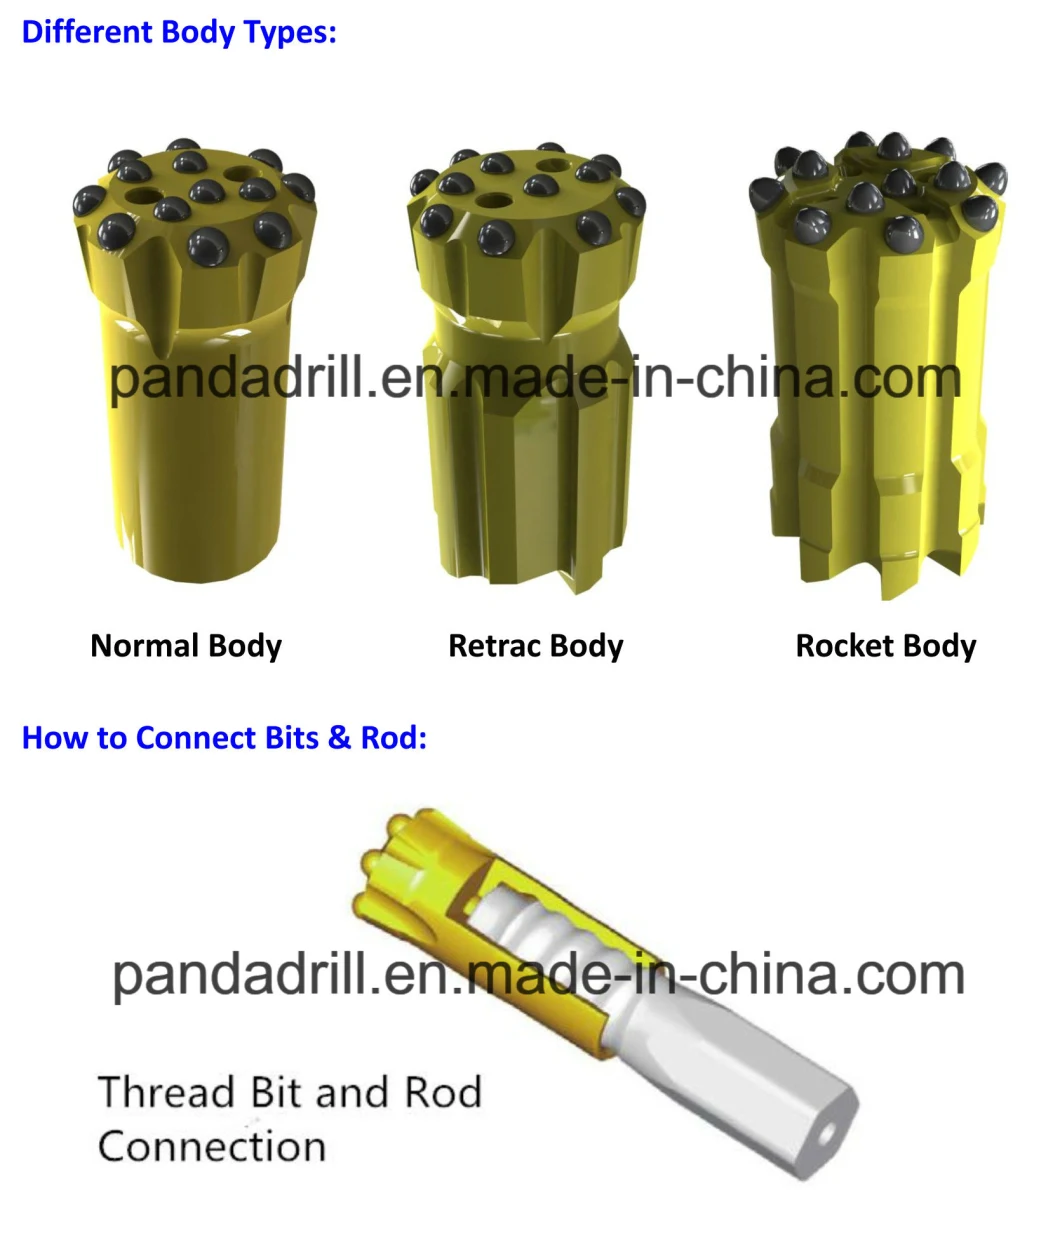 R32, R38, T38, T45, T51 Retrac&Standard Thread Drill Bits